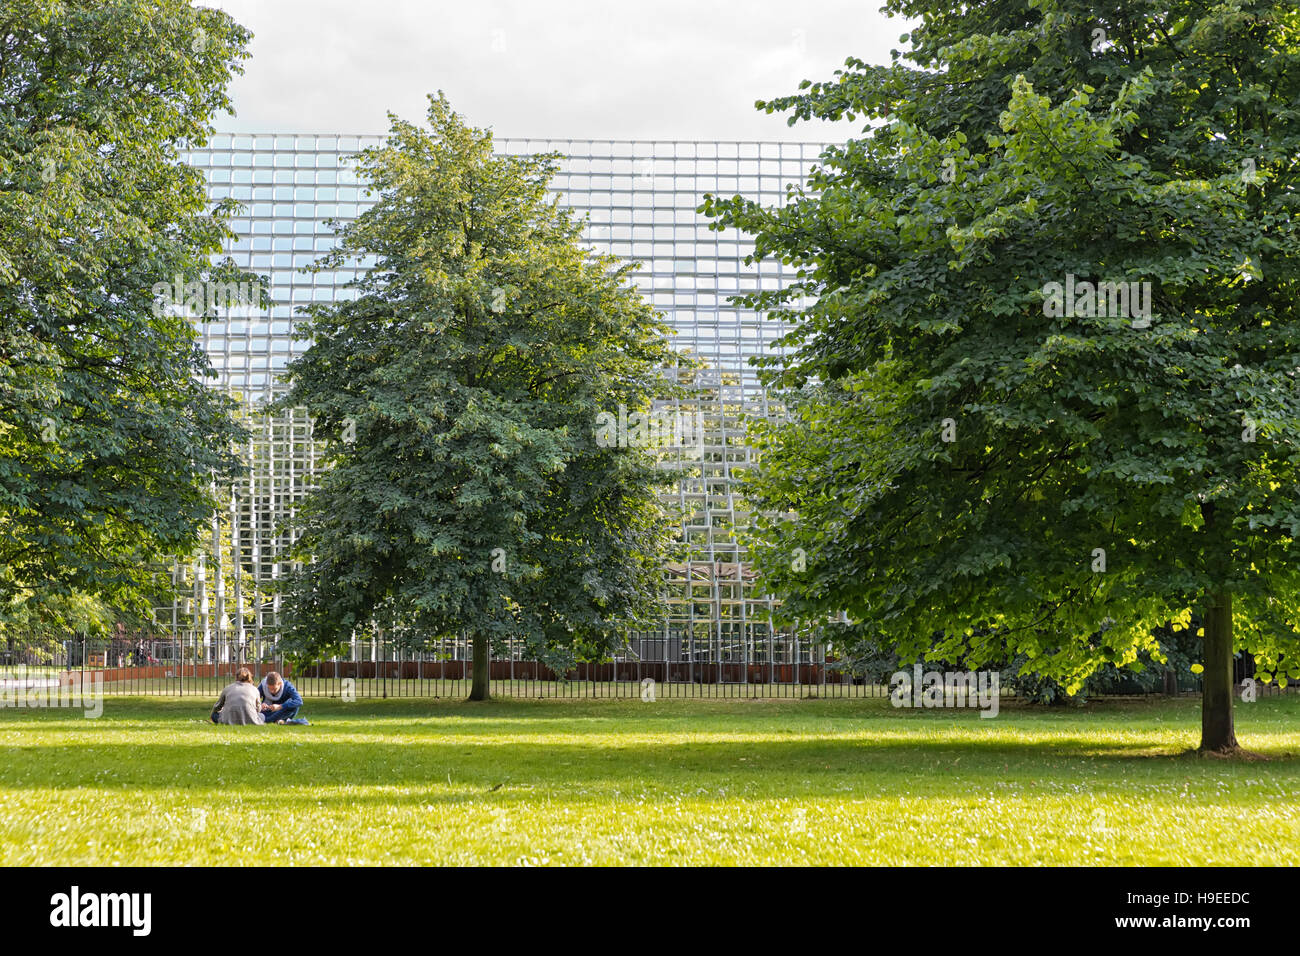 Luglio 2016 - Londra, Inghilterra : la Serpentine Gallery Pavilion, progettato da architetti danesi BIG (Bjarke Ingels Group) a Hyde Park il 28 luglio 2016 in Foto Stock